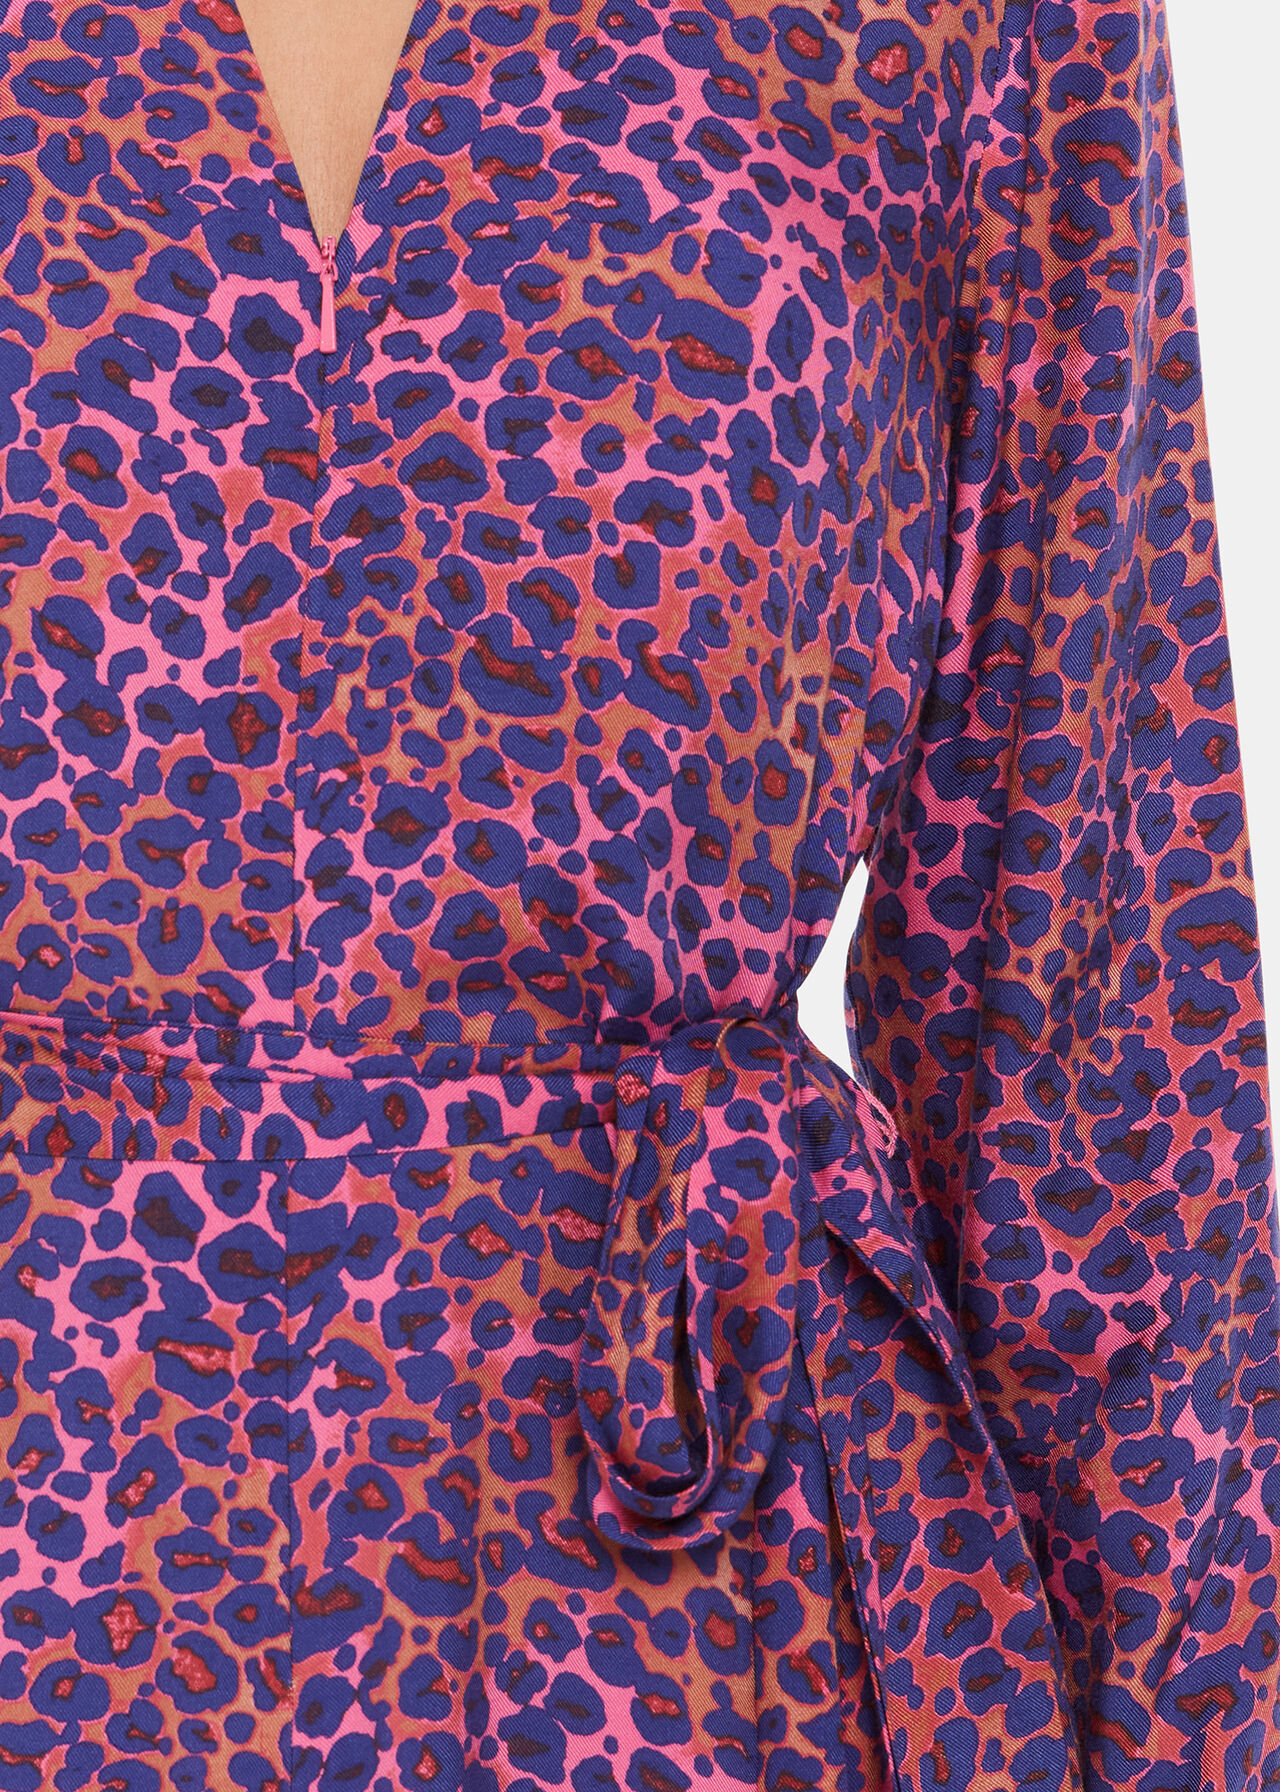 Mottled Leopard Midi Dress